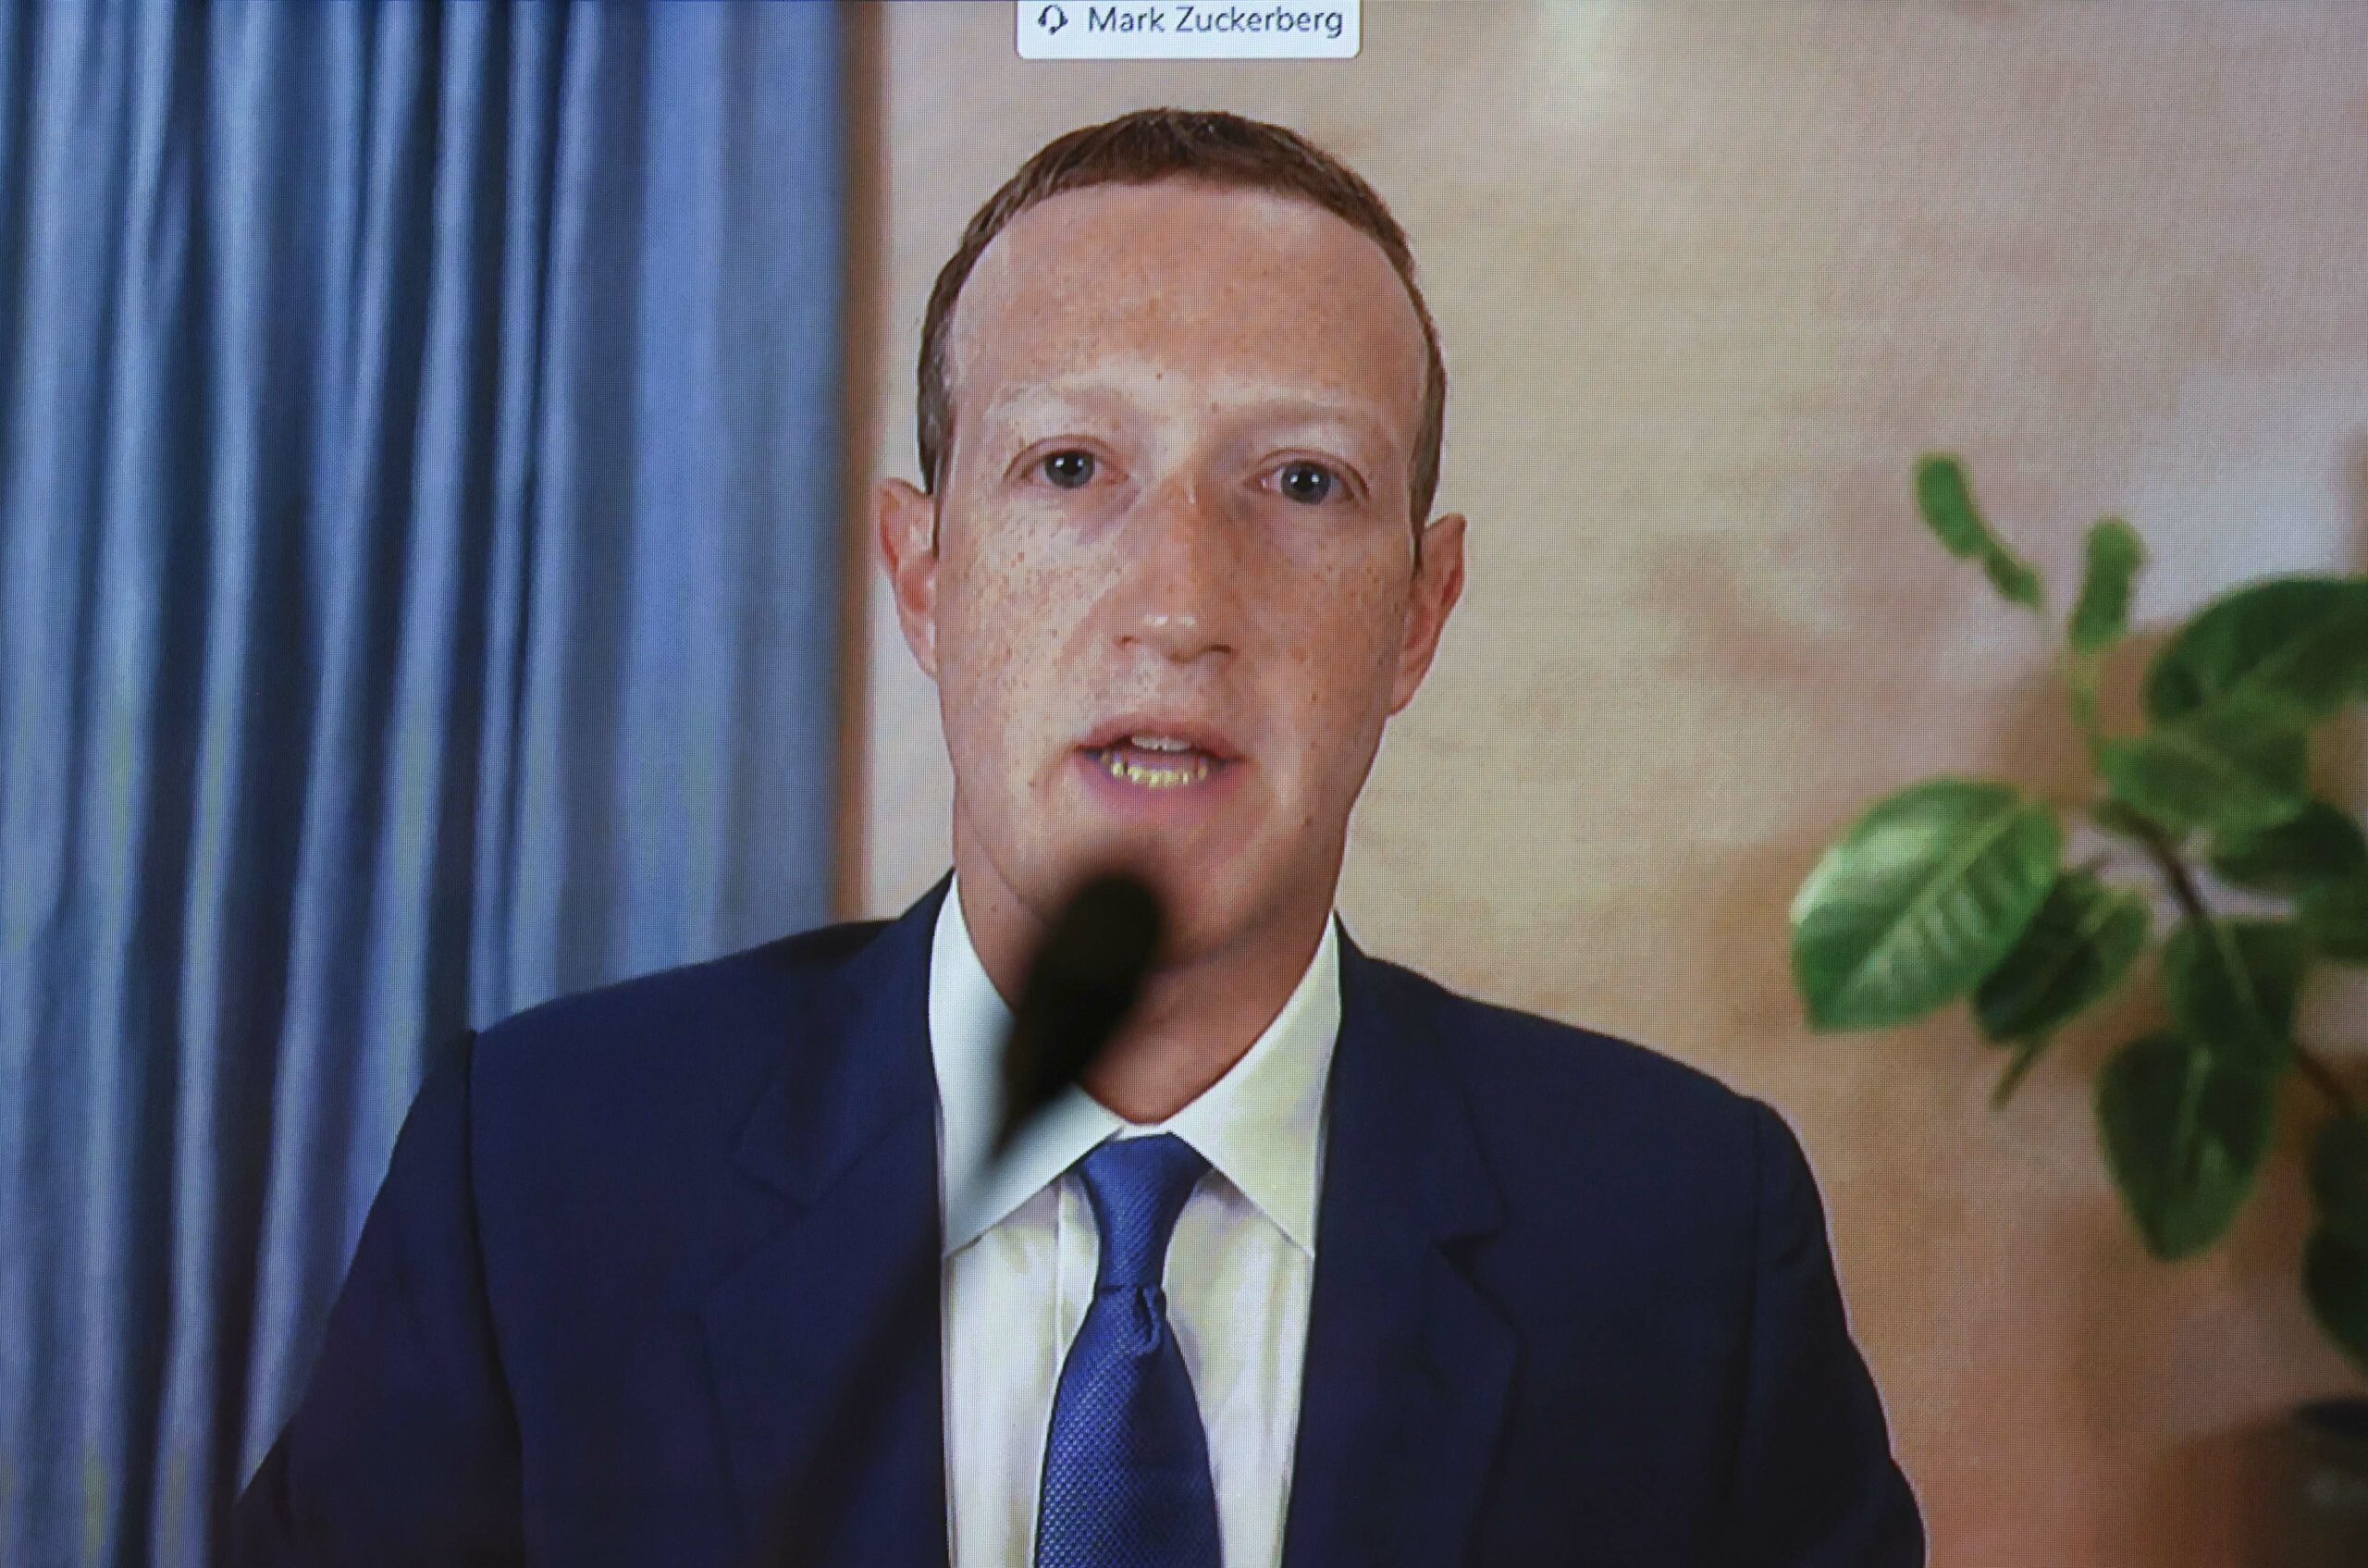 mark zuckerberg ha sido demandado por la fiscalia de washington por el escandalo de cambridge analytica